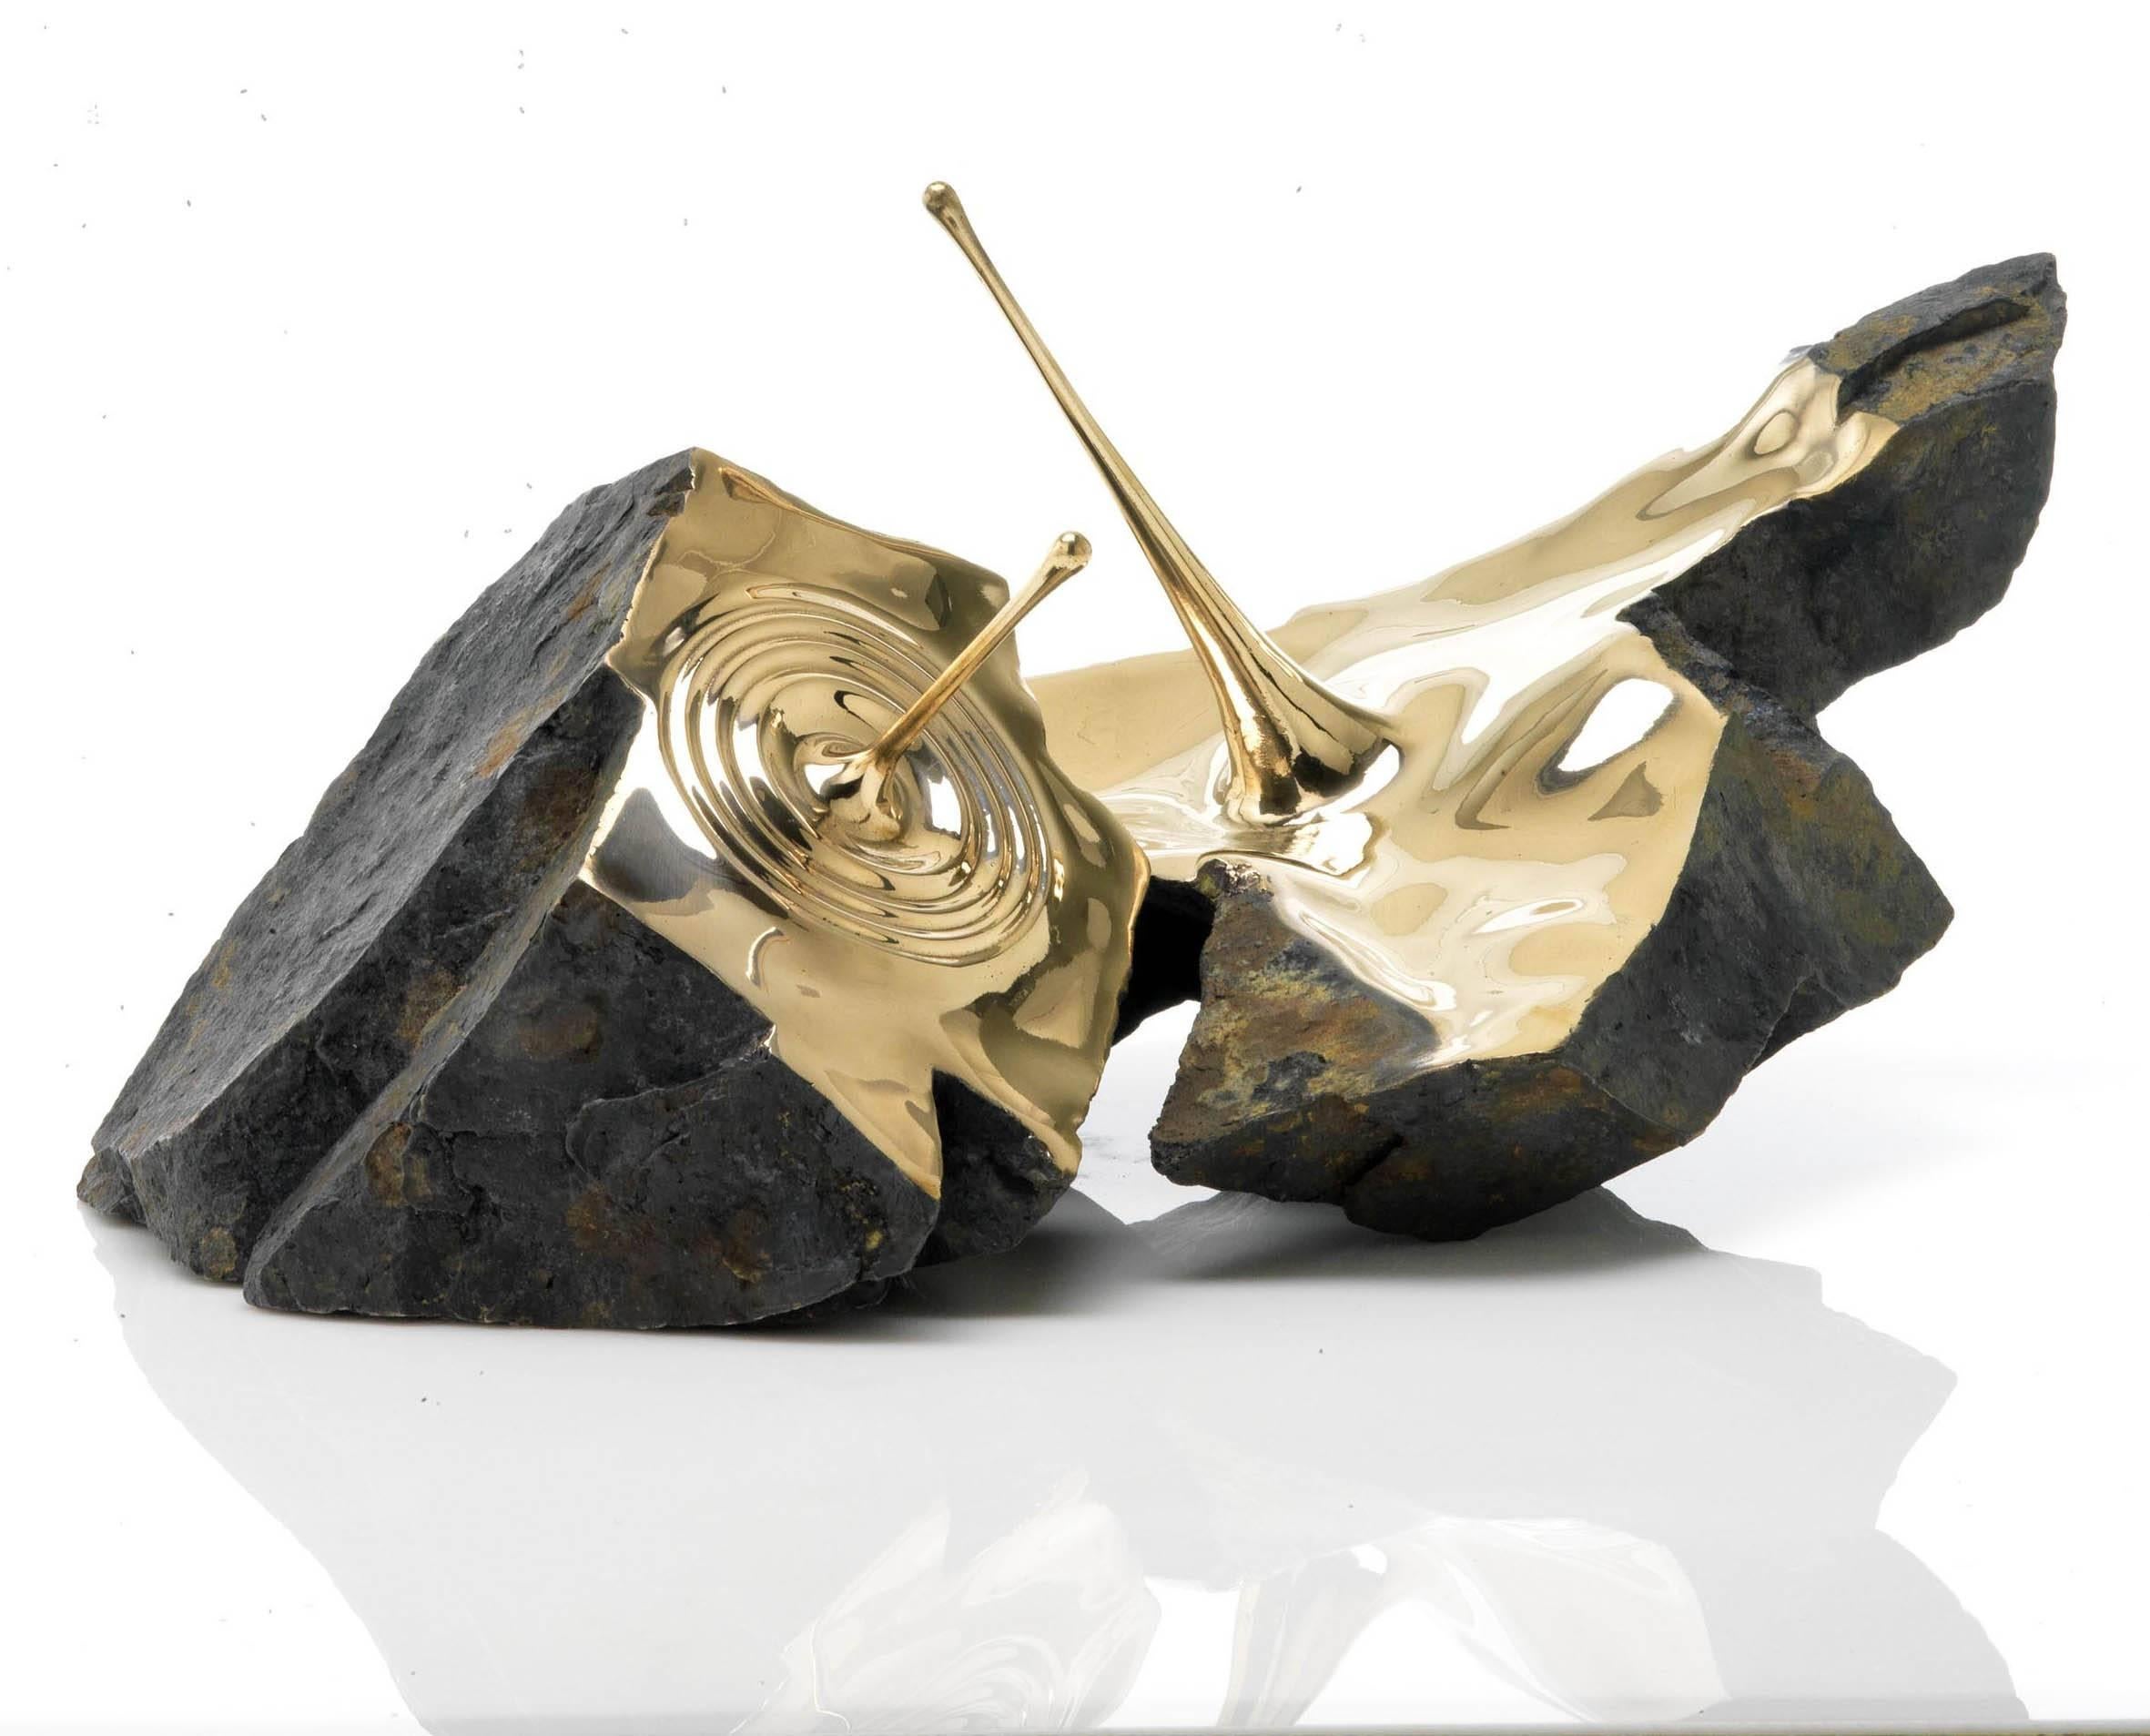 Résonance II, de l'artiste français contemporain Romain Langlois. 
58 × 72.5 × 67.6 cm
Sculpture en bronze, édition limitée à 8 & 4 A.P. Intérieur en bronze poli, extérieur en bronze bruni en trompe-l'oeil en forme de bloc.
Dans cette sculpture en